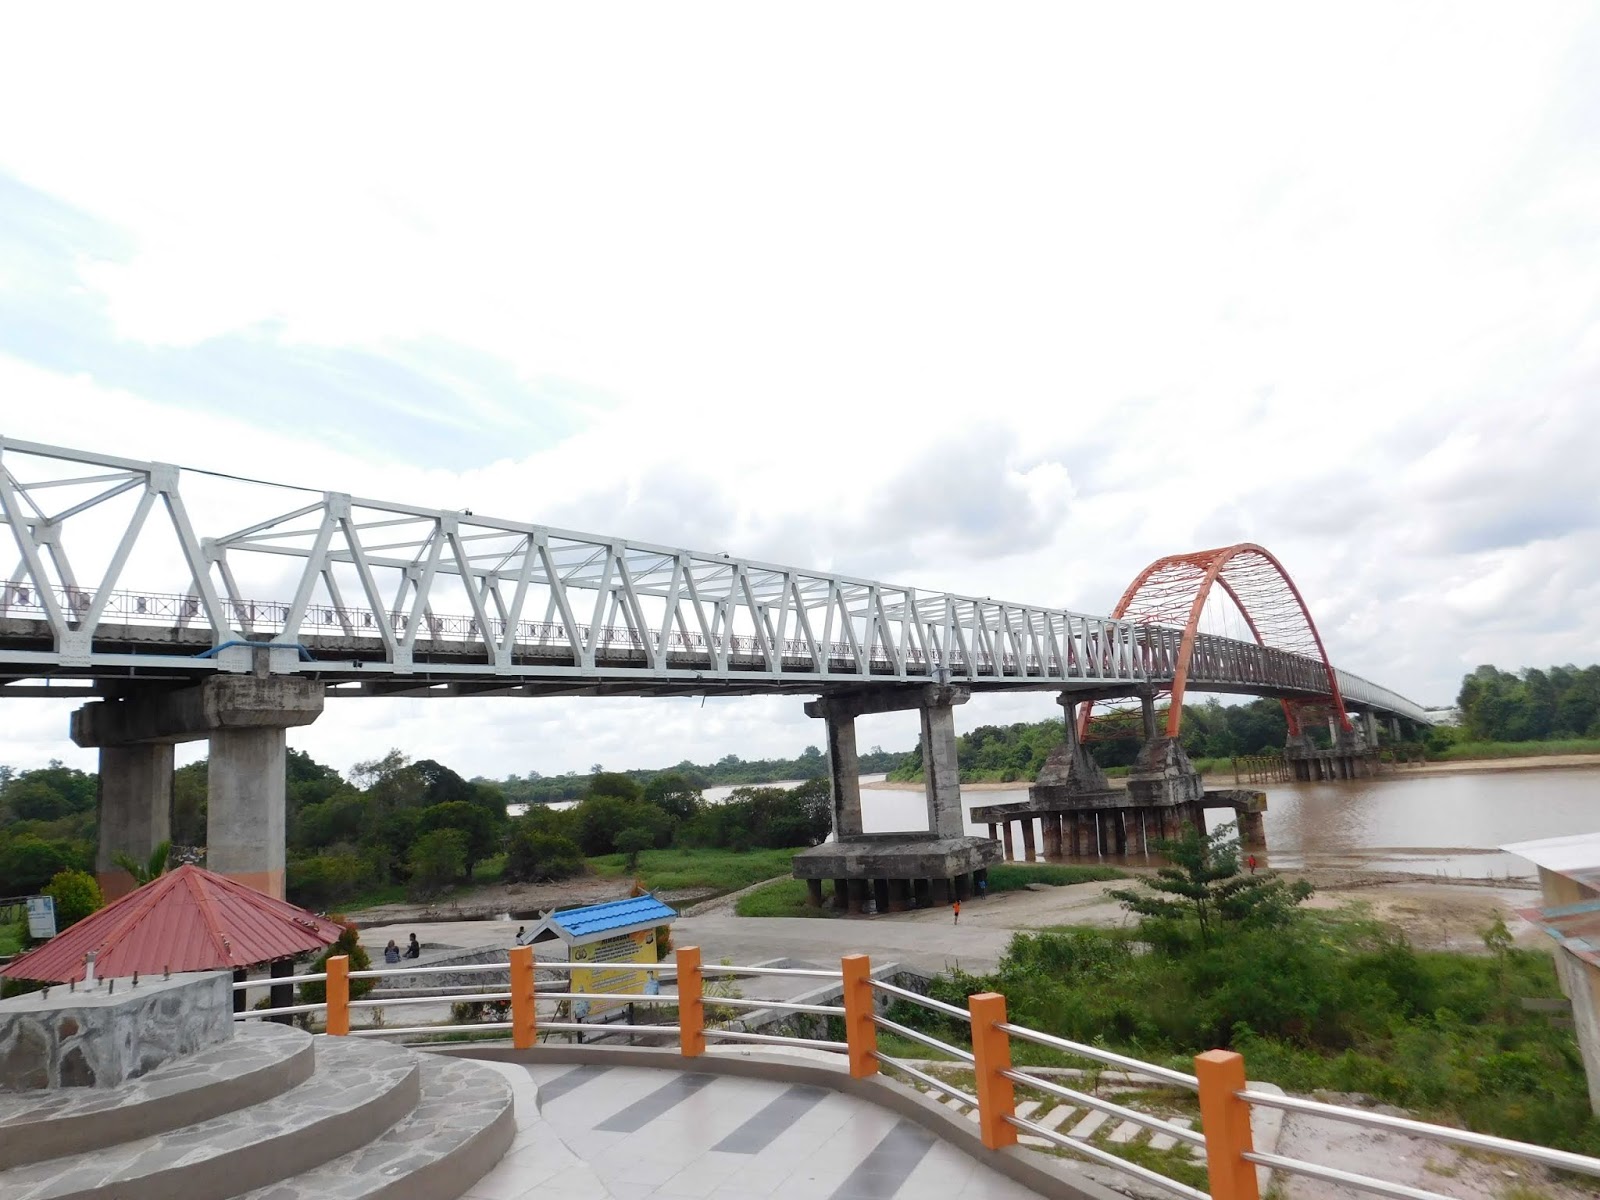  Jembatan Kahayan  Icon Kota Palangkaraya idblogpacker 